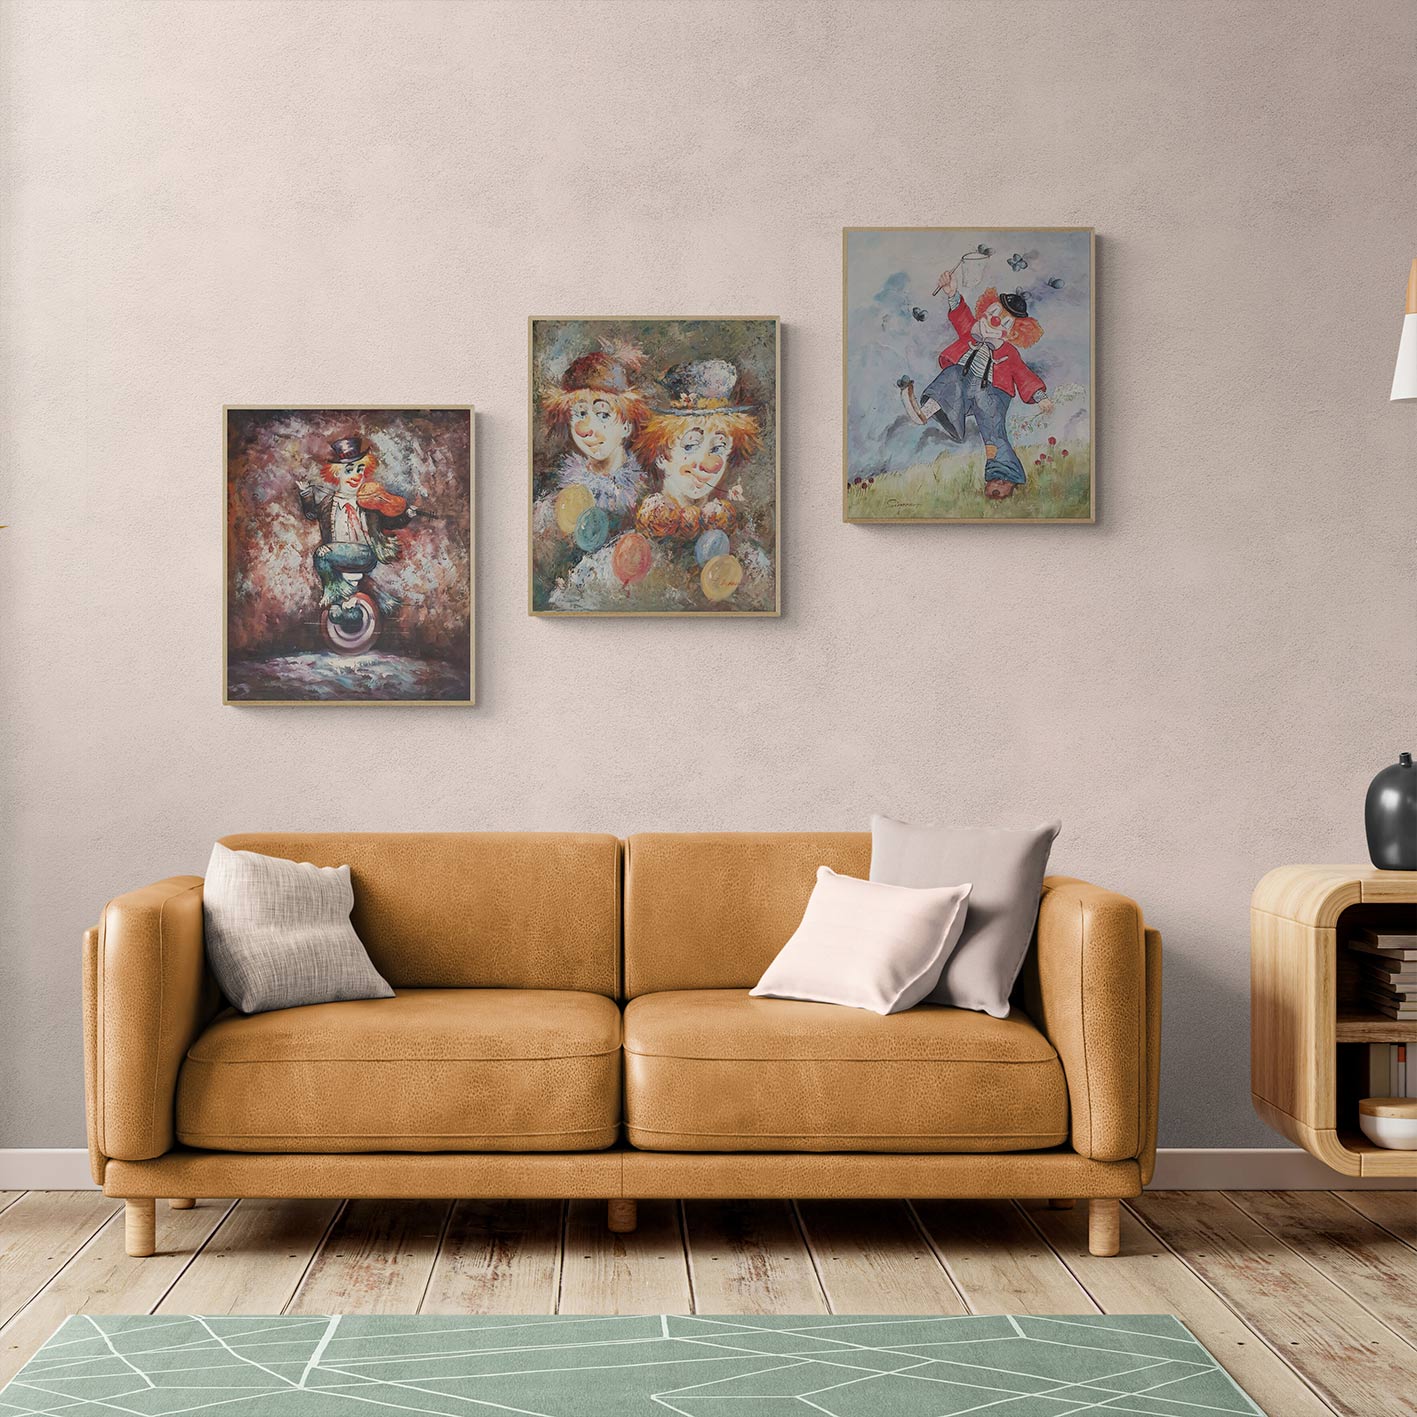 Clown Triptych Painting 50x60 cm [3 pieces]